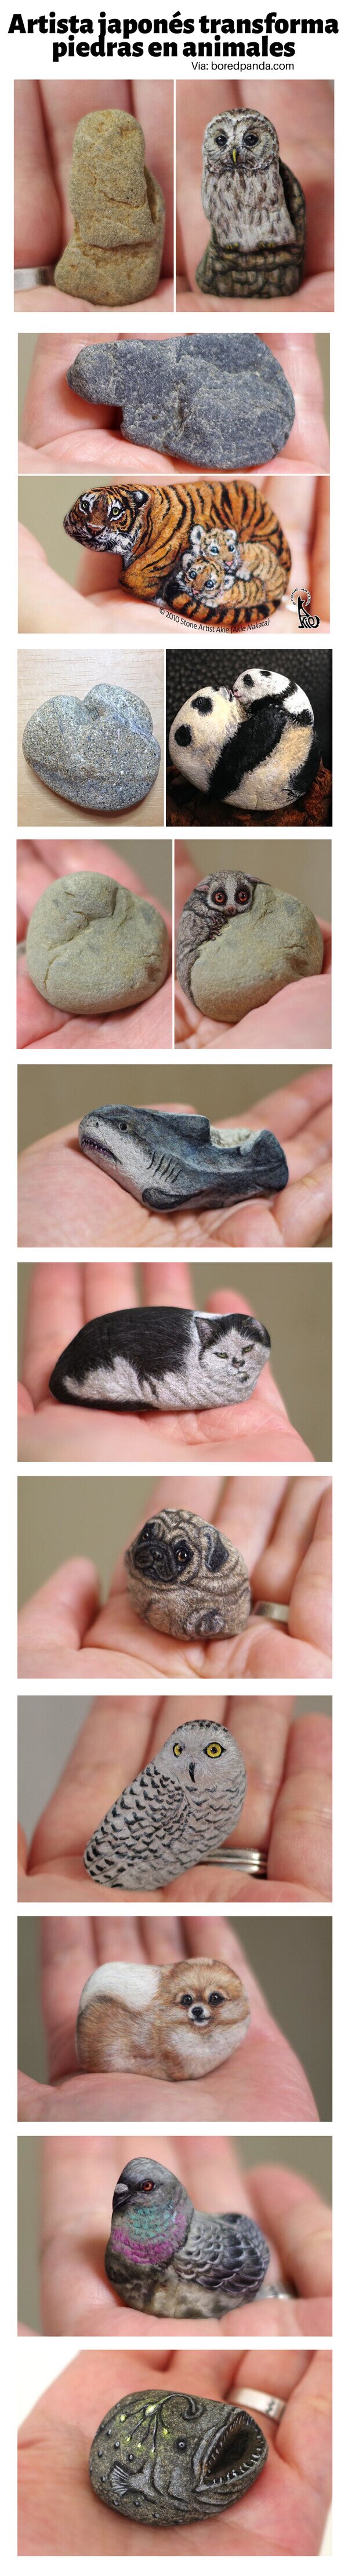 Meme_otros - Artista japonés transforma piedras en animales